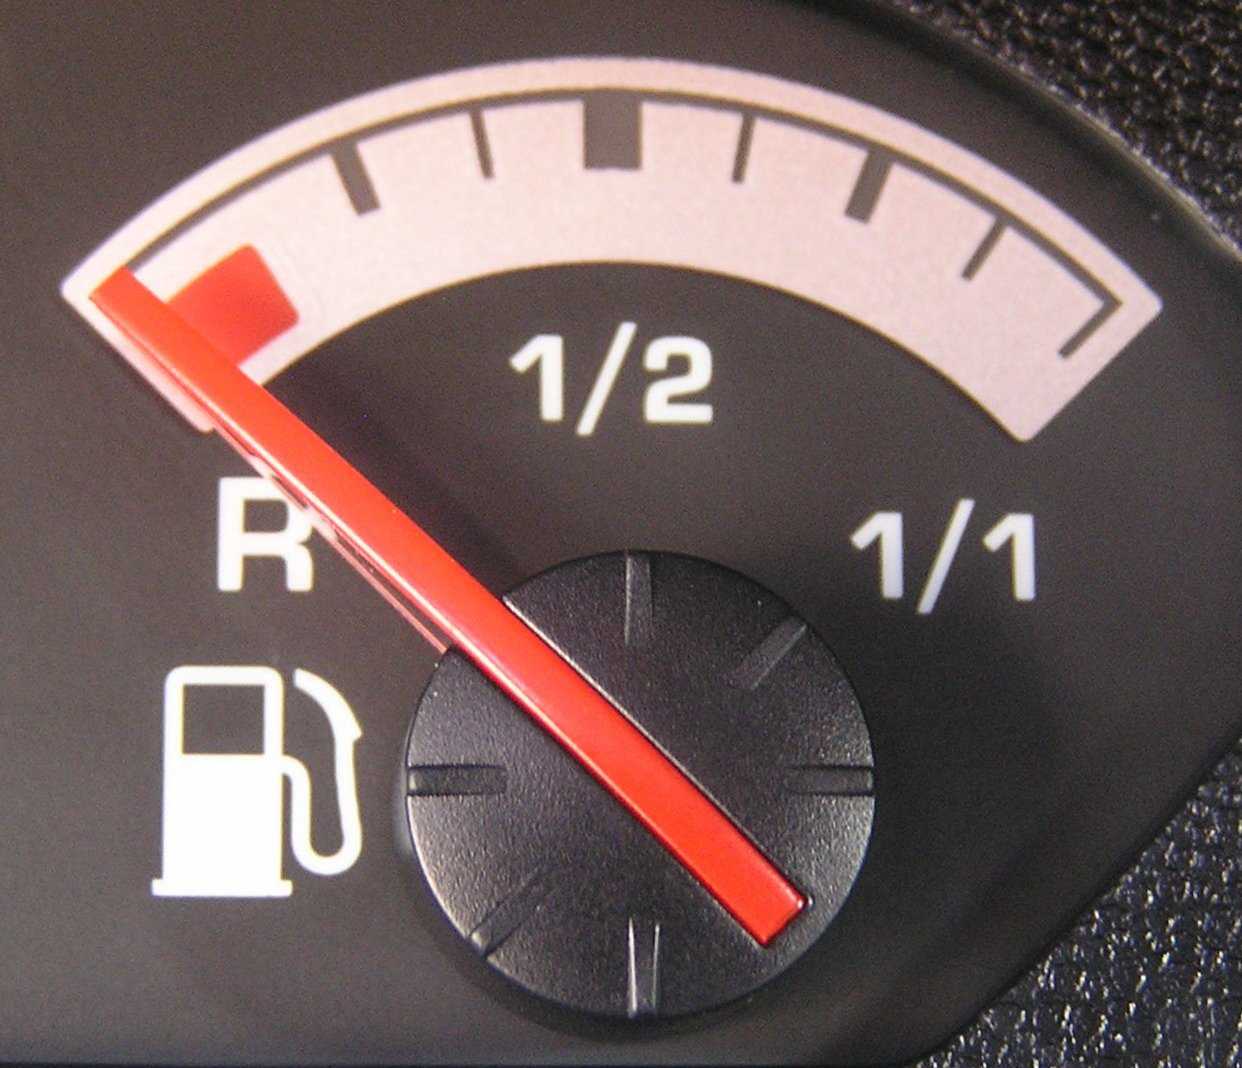 Кончился бензин: вызываем эвакуатора или останавливаем старую машину чтобы перелить бензин